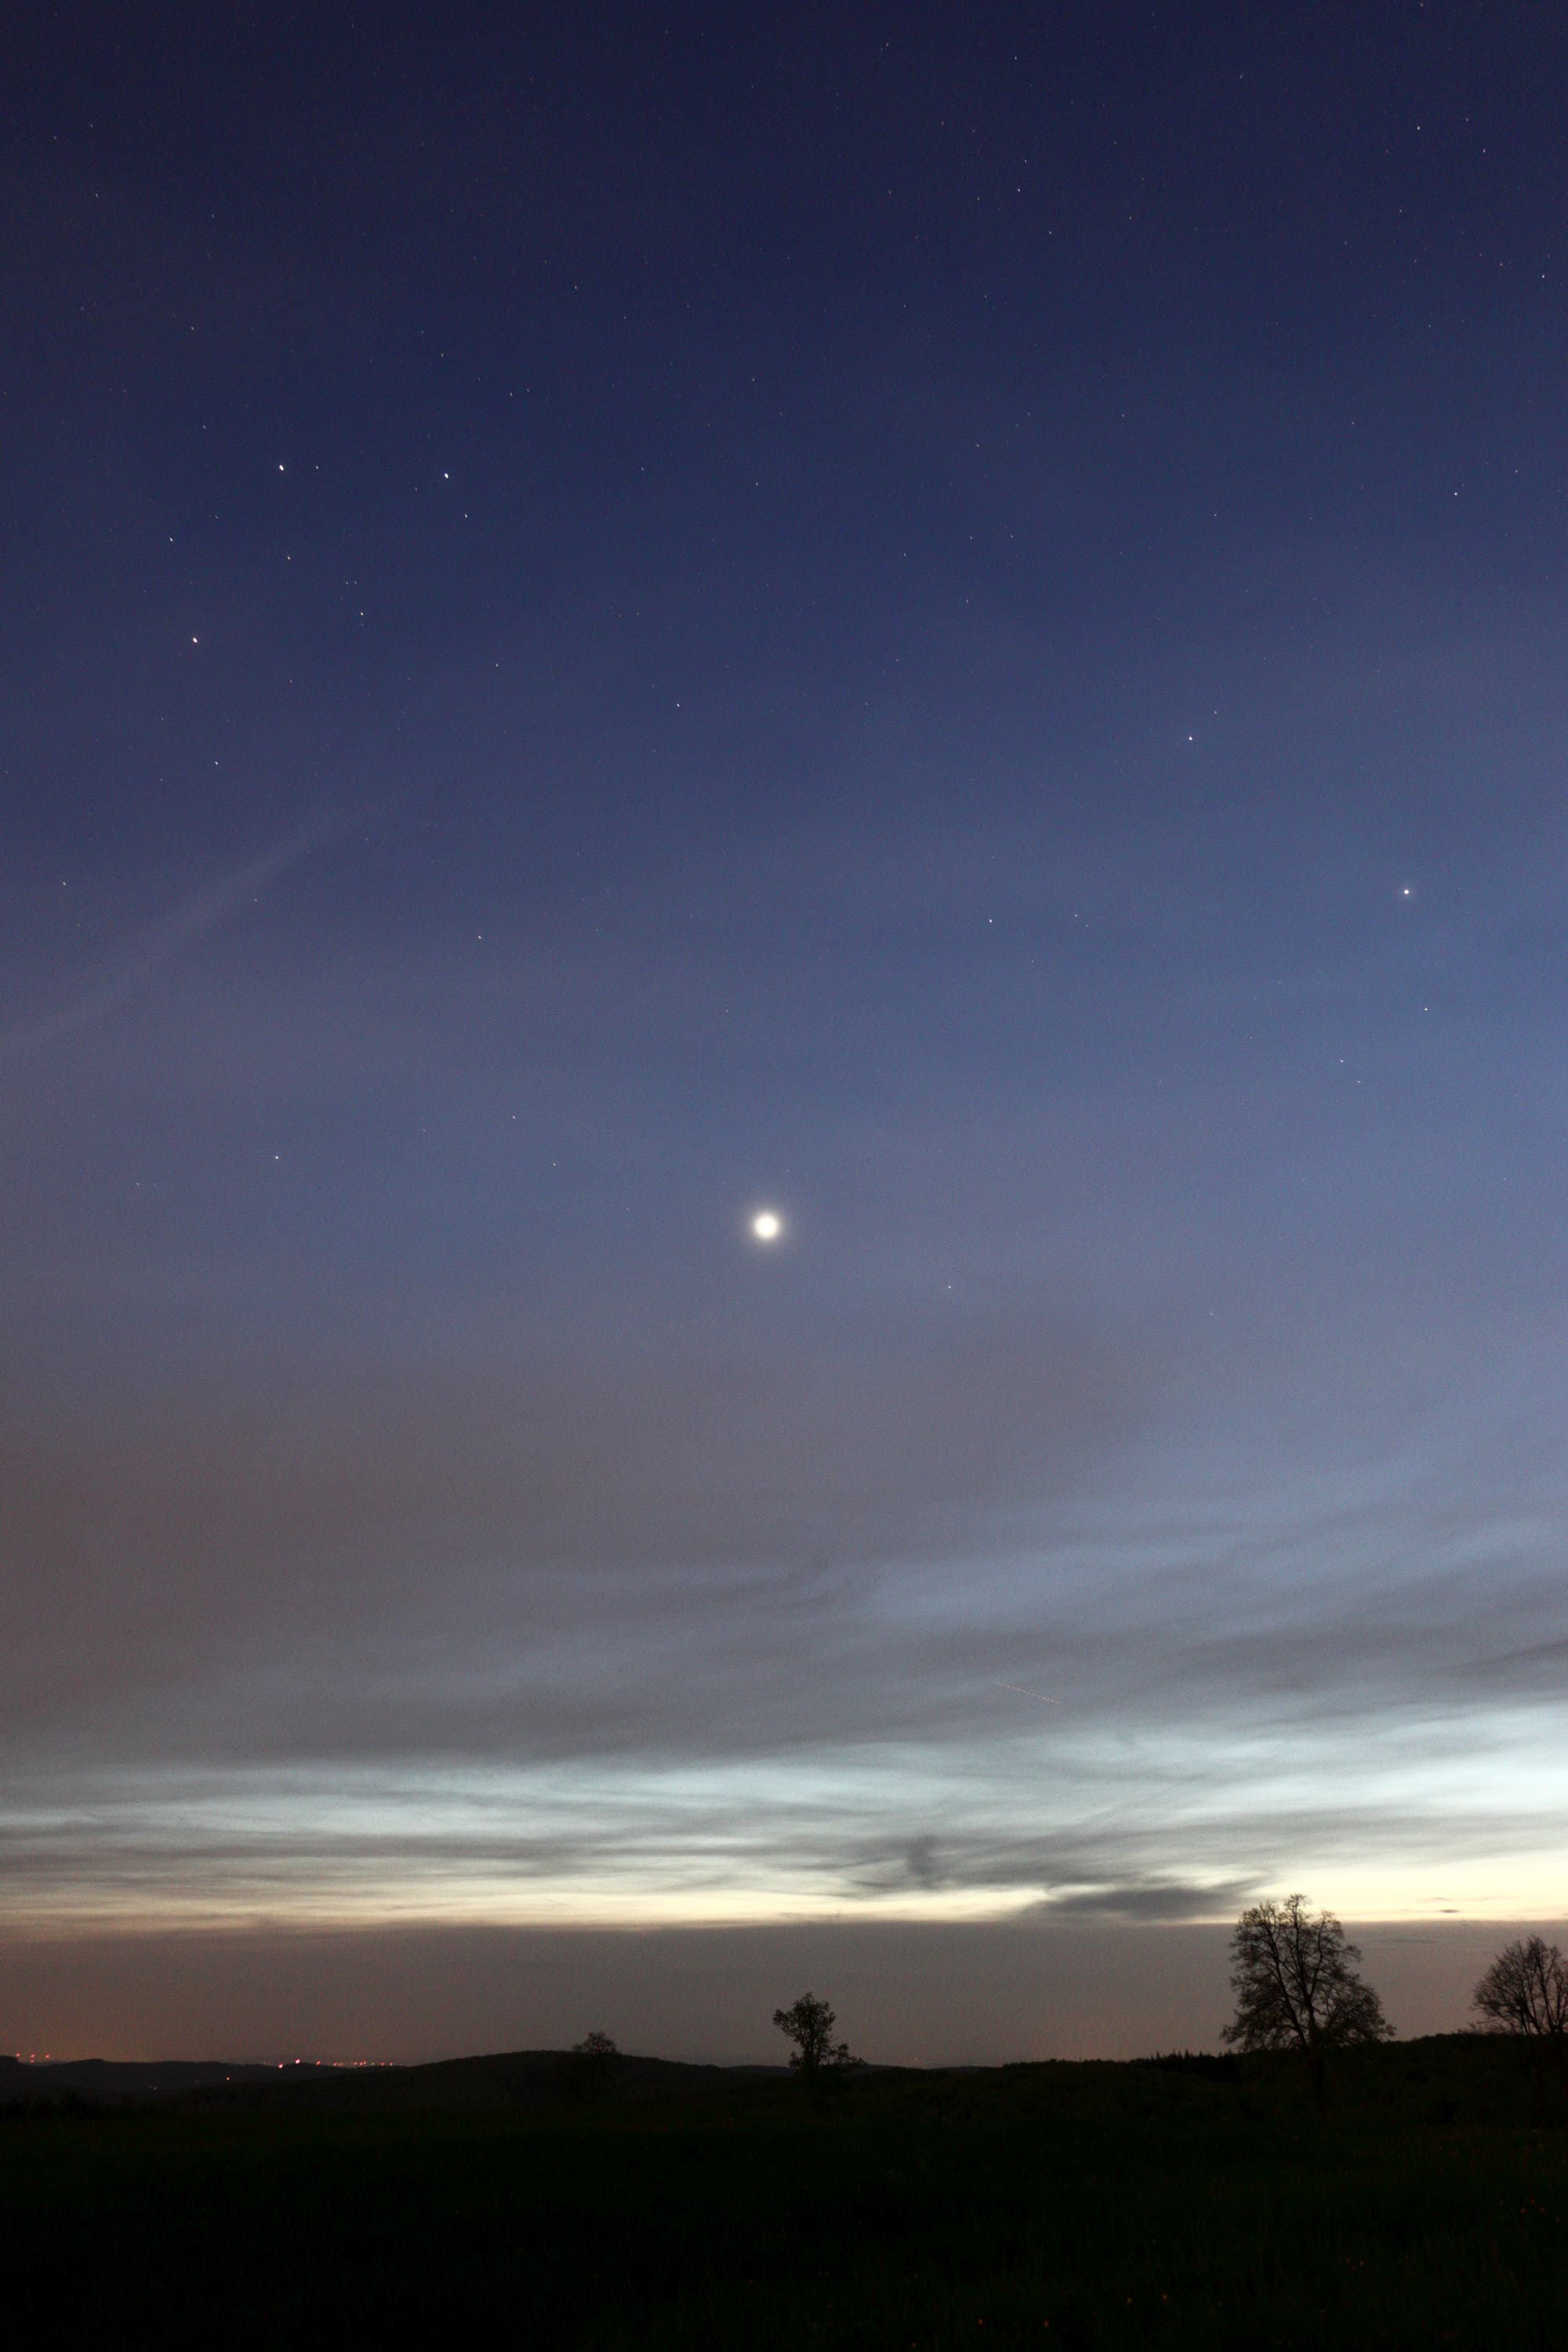 Abendstern Venus, Zwillinge mit Mars und Kapella